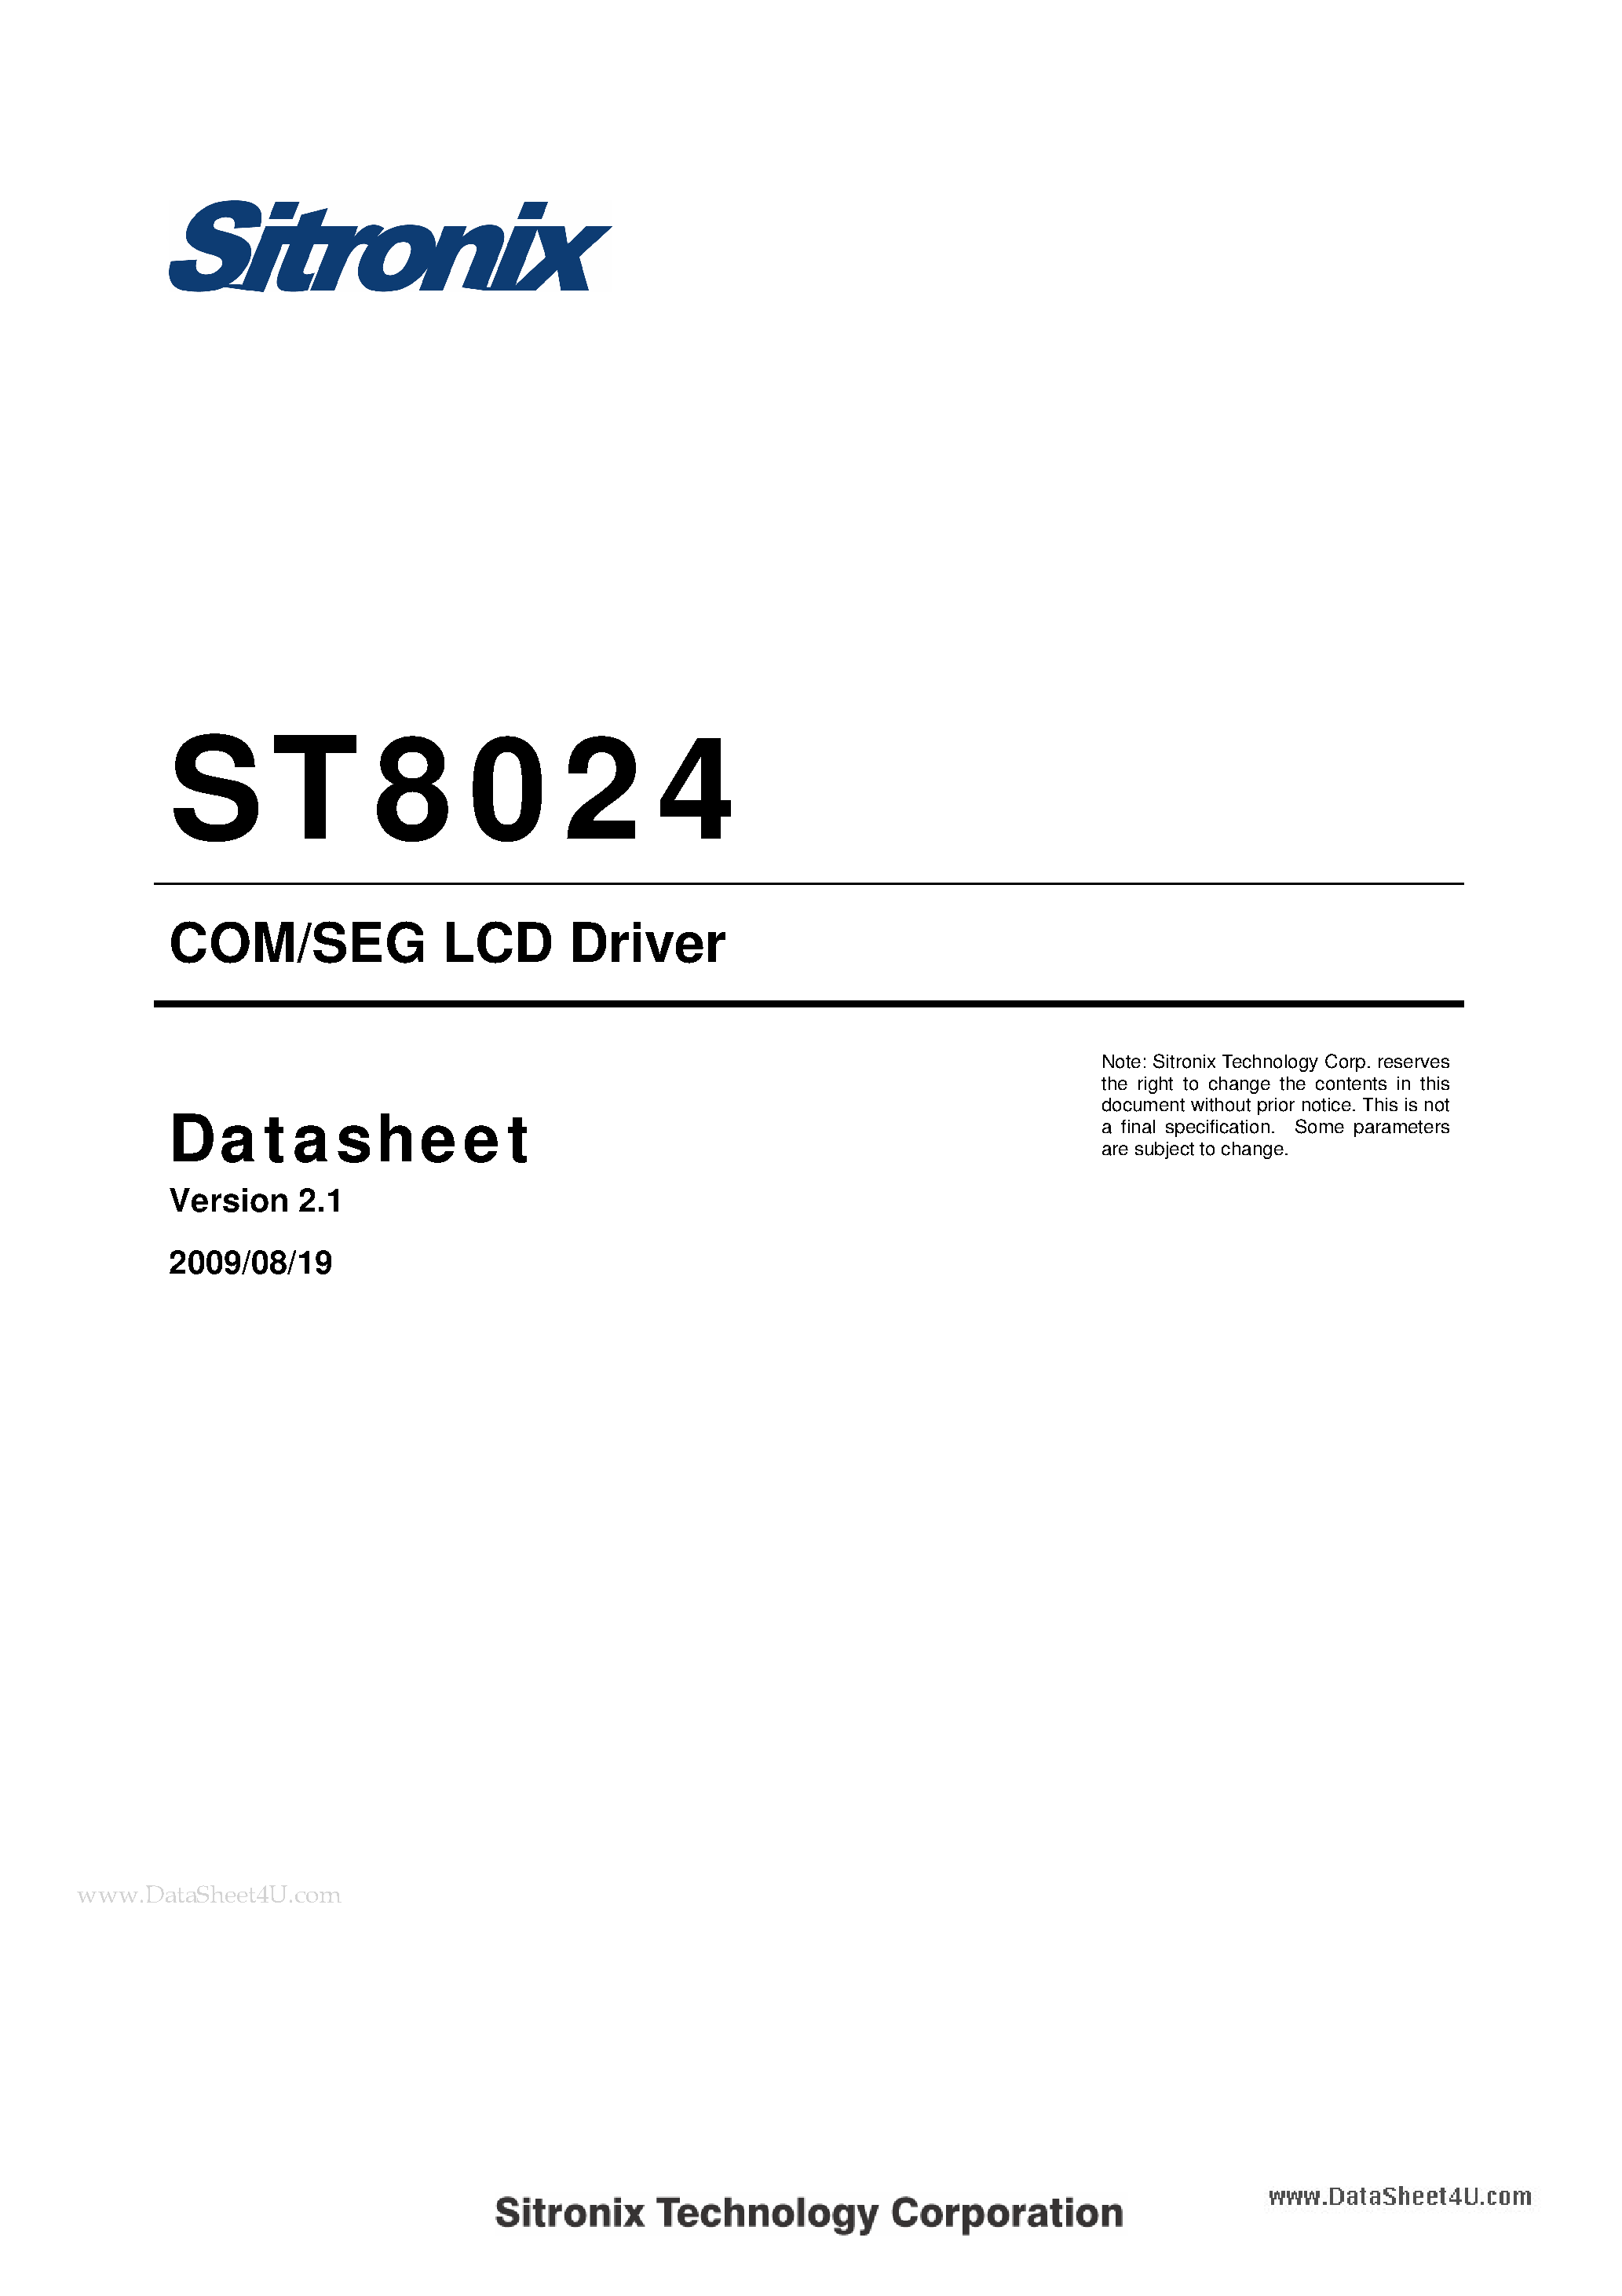 Даташит ST8024 - COM/SEG LCD Driver страница 1